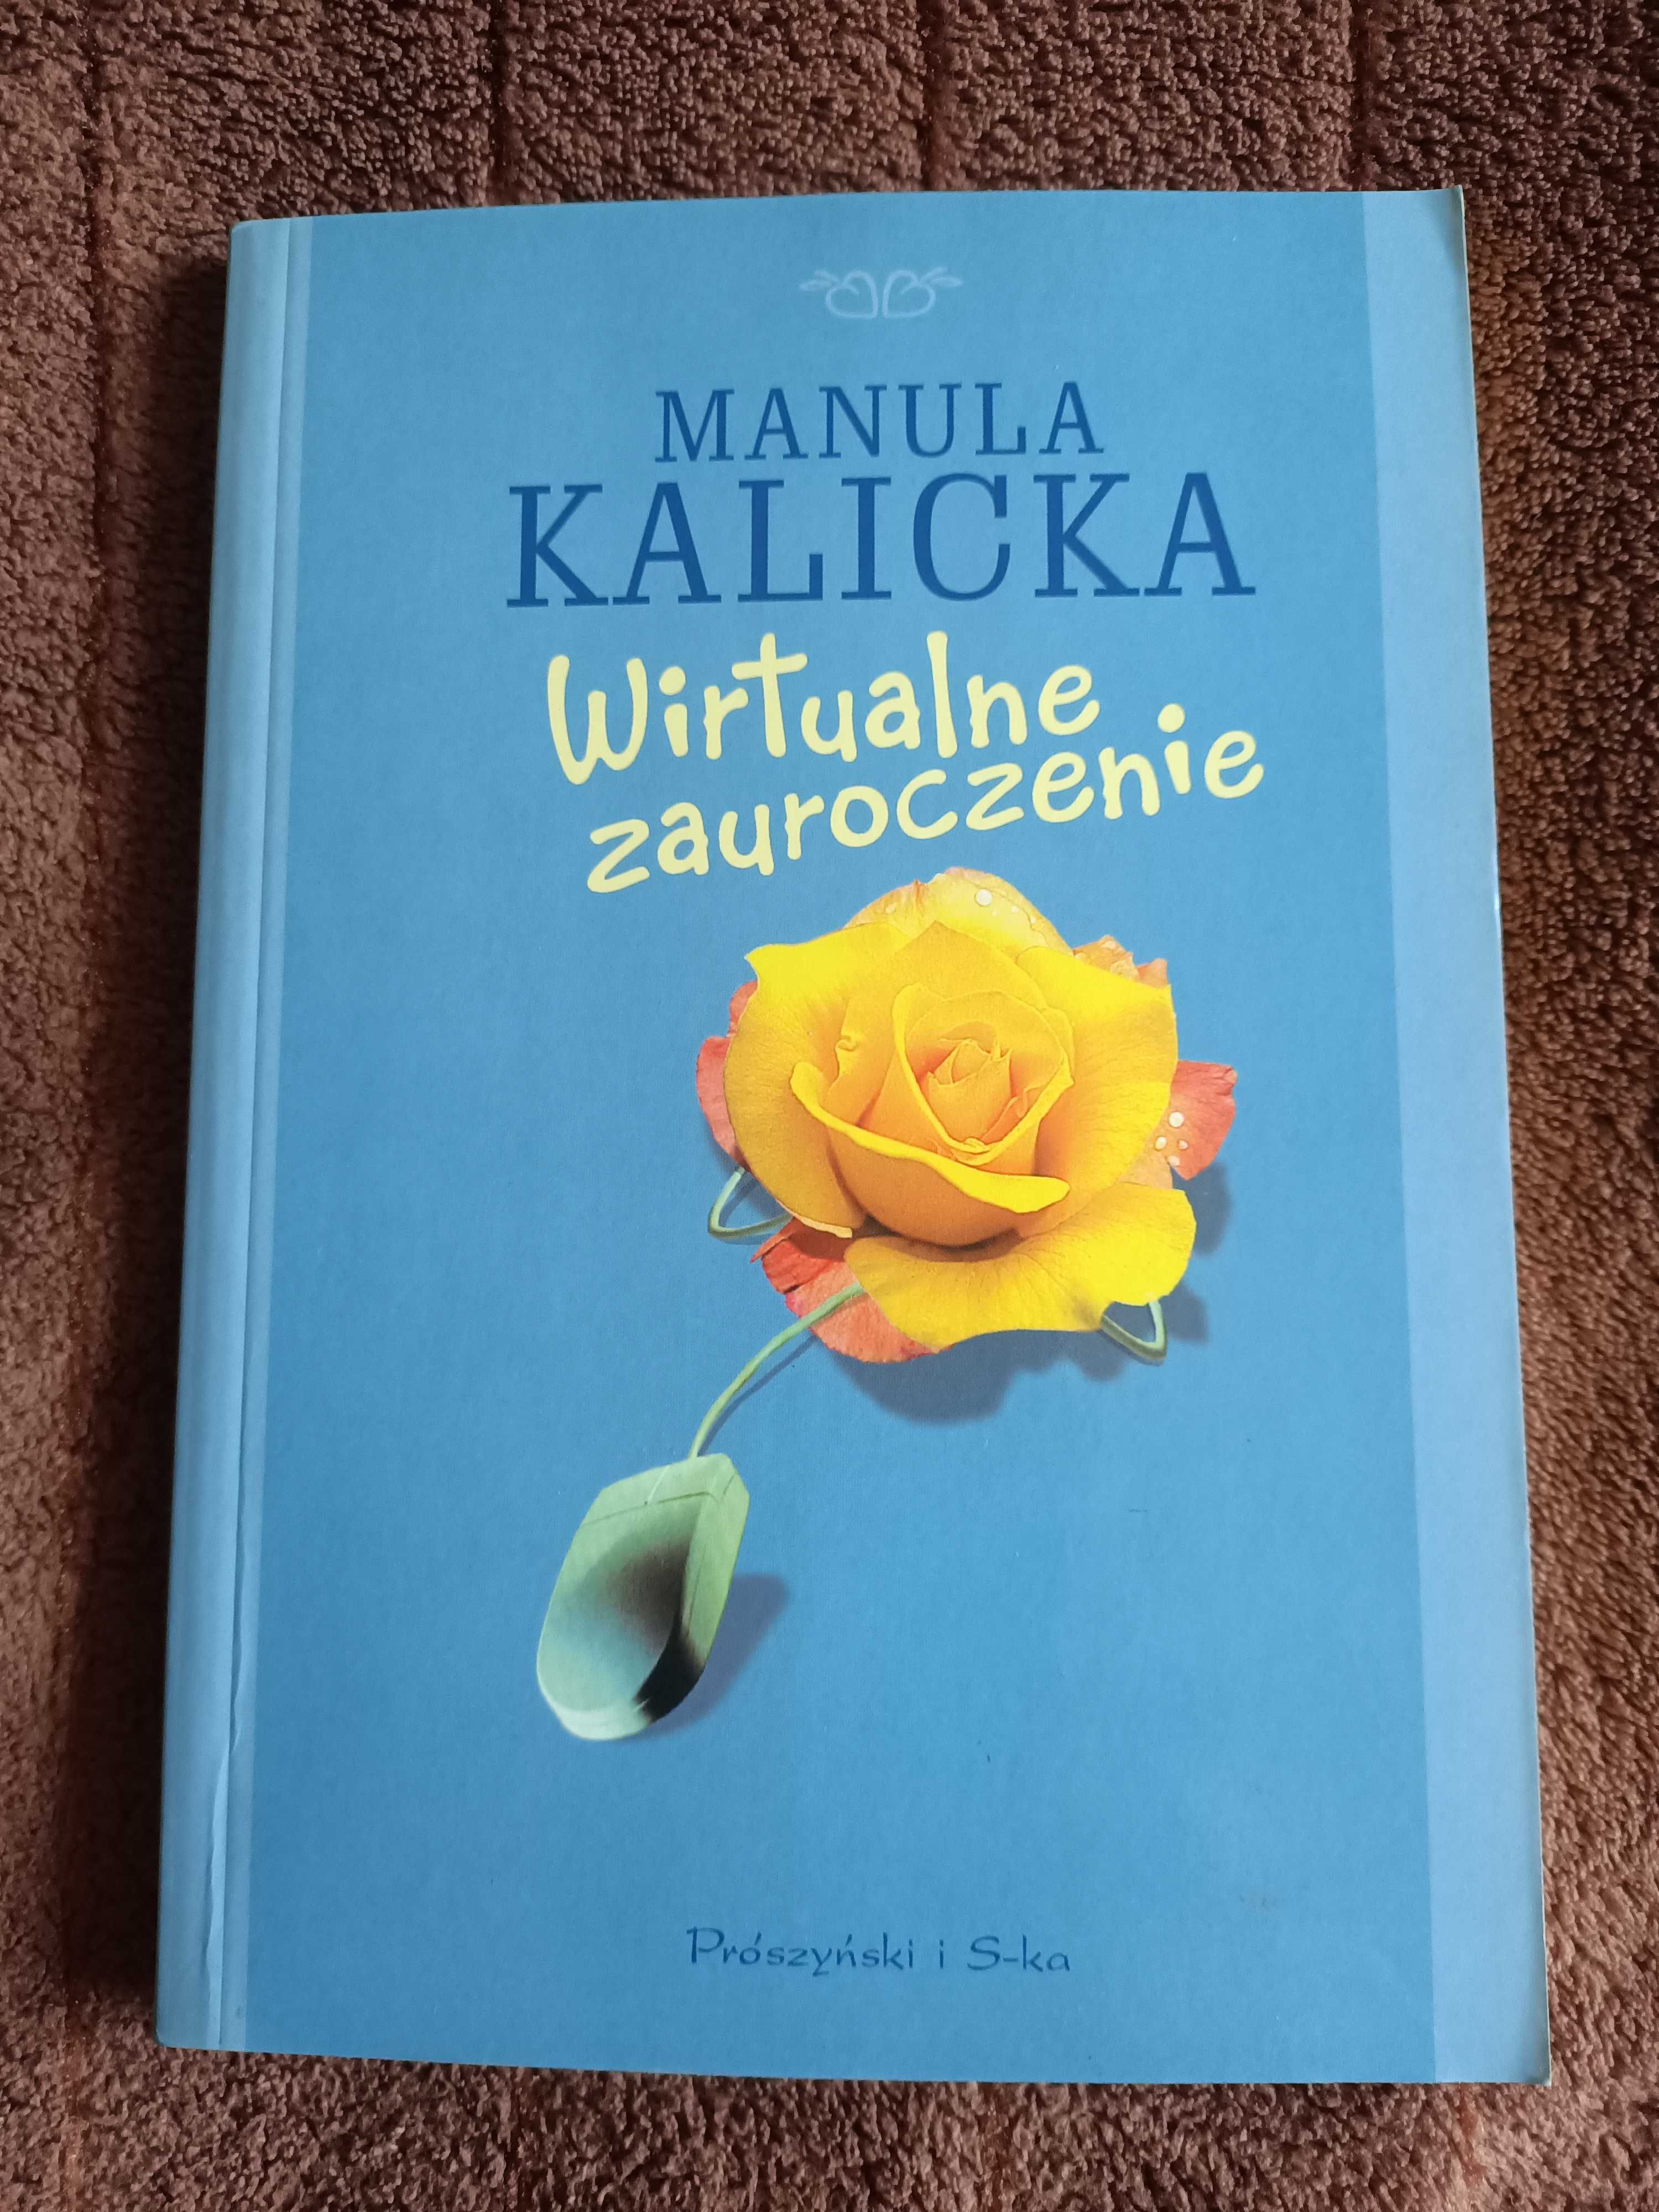 Manula Kalicka - Wirtualne zauroczenie